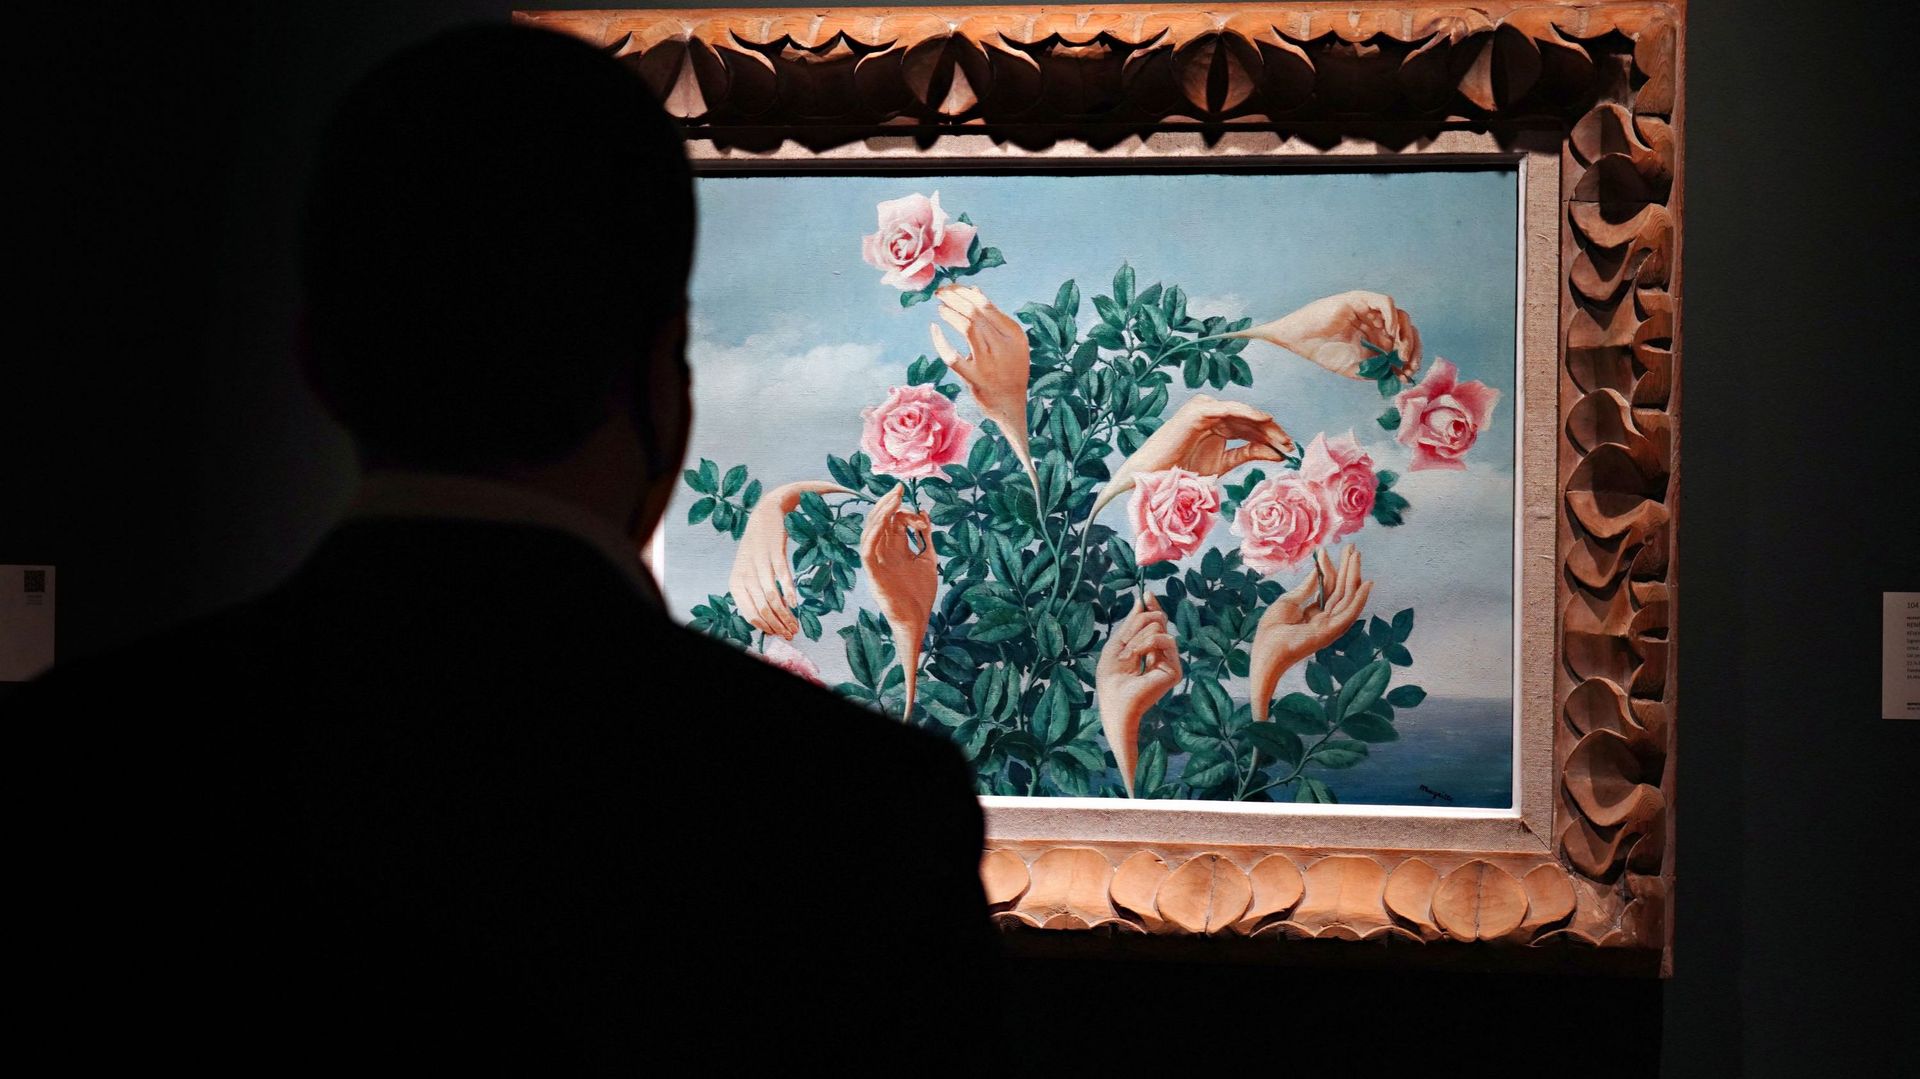 Une personne portant un masque de protection regarde "Rêverie de Monsieur James" de René Magritte lors d'une avant-première de presse de la prochaine vente du soir d'art impressionniste et moderne chez Sotheby's, le 23 octobre 2020 à New York.
